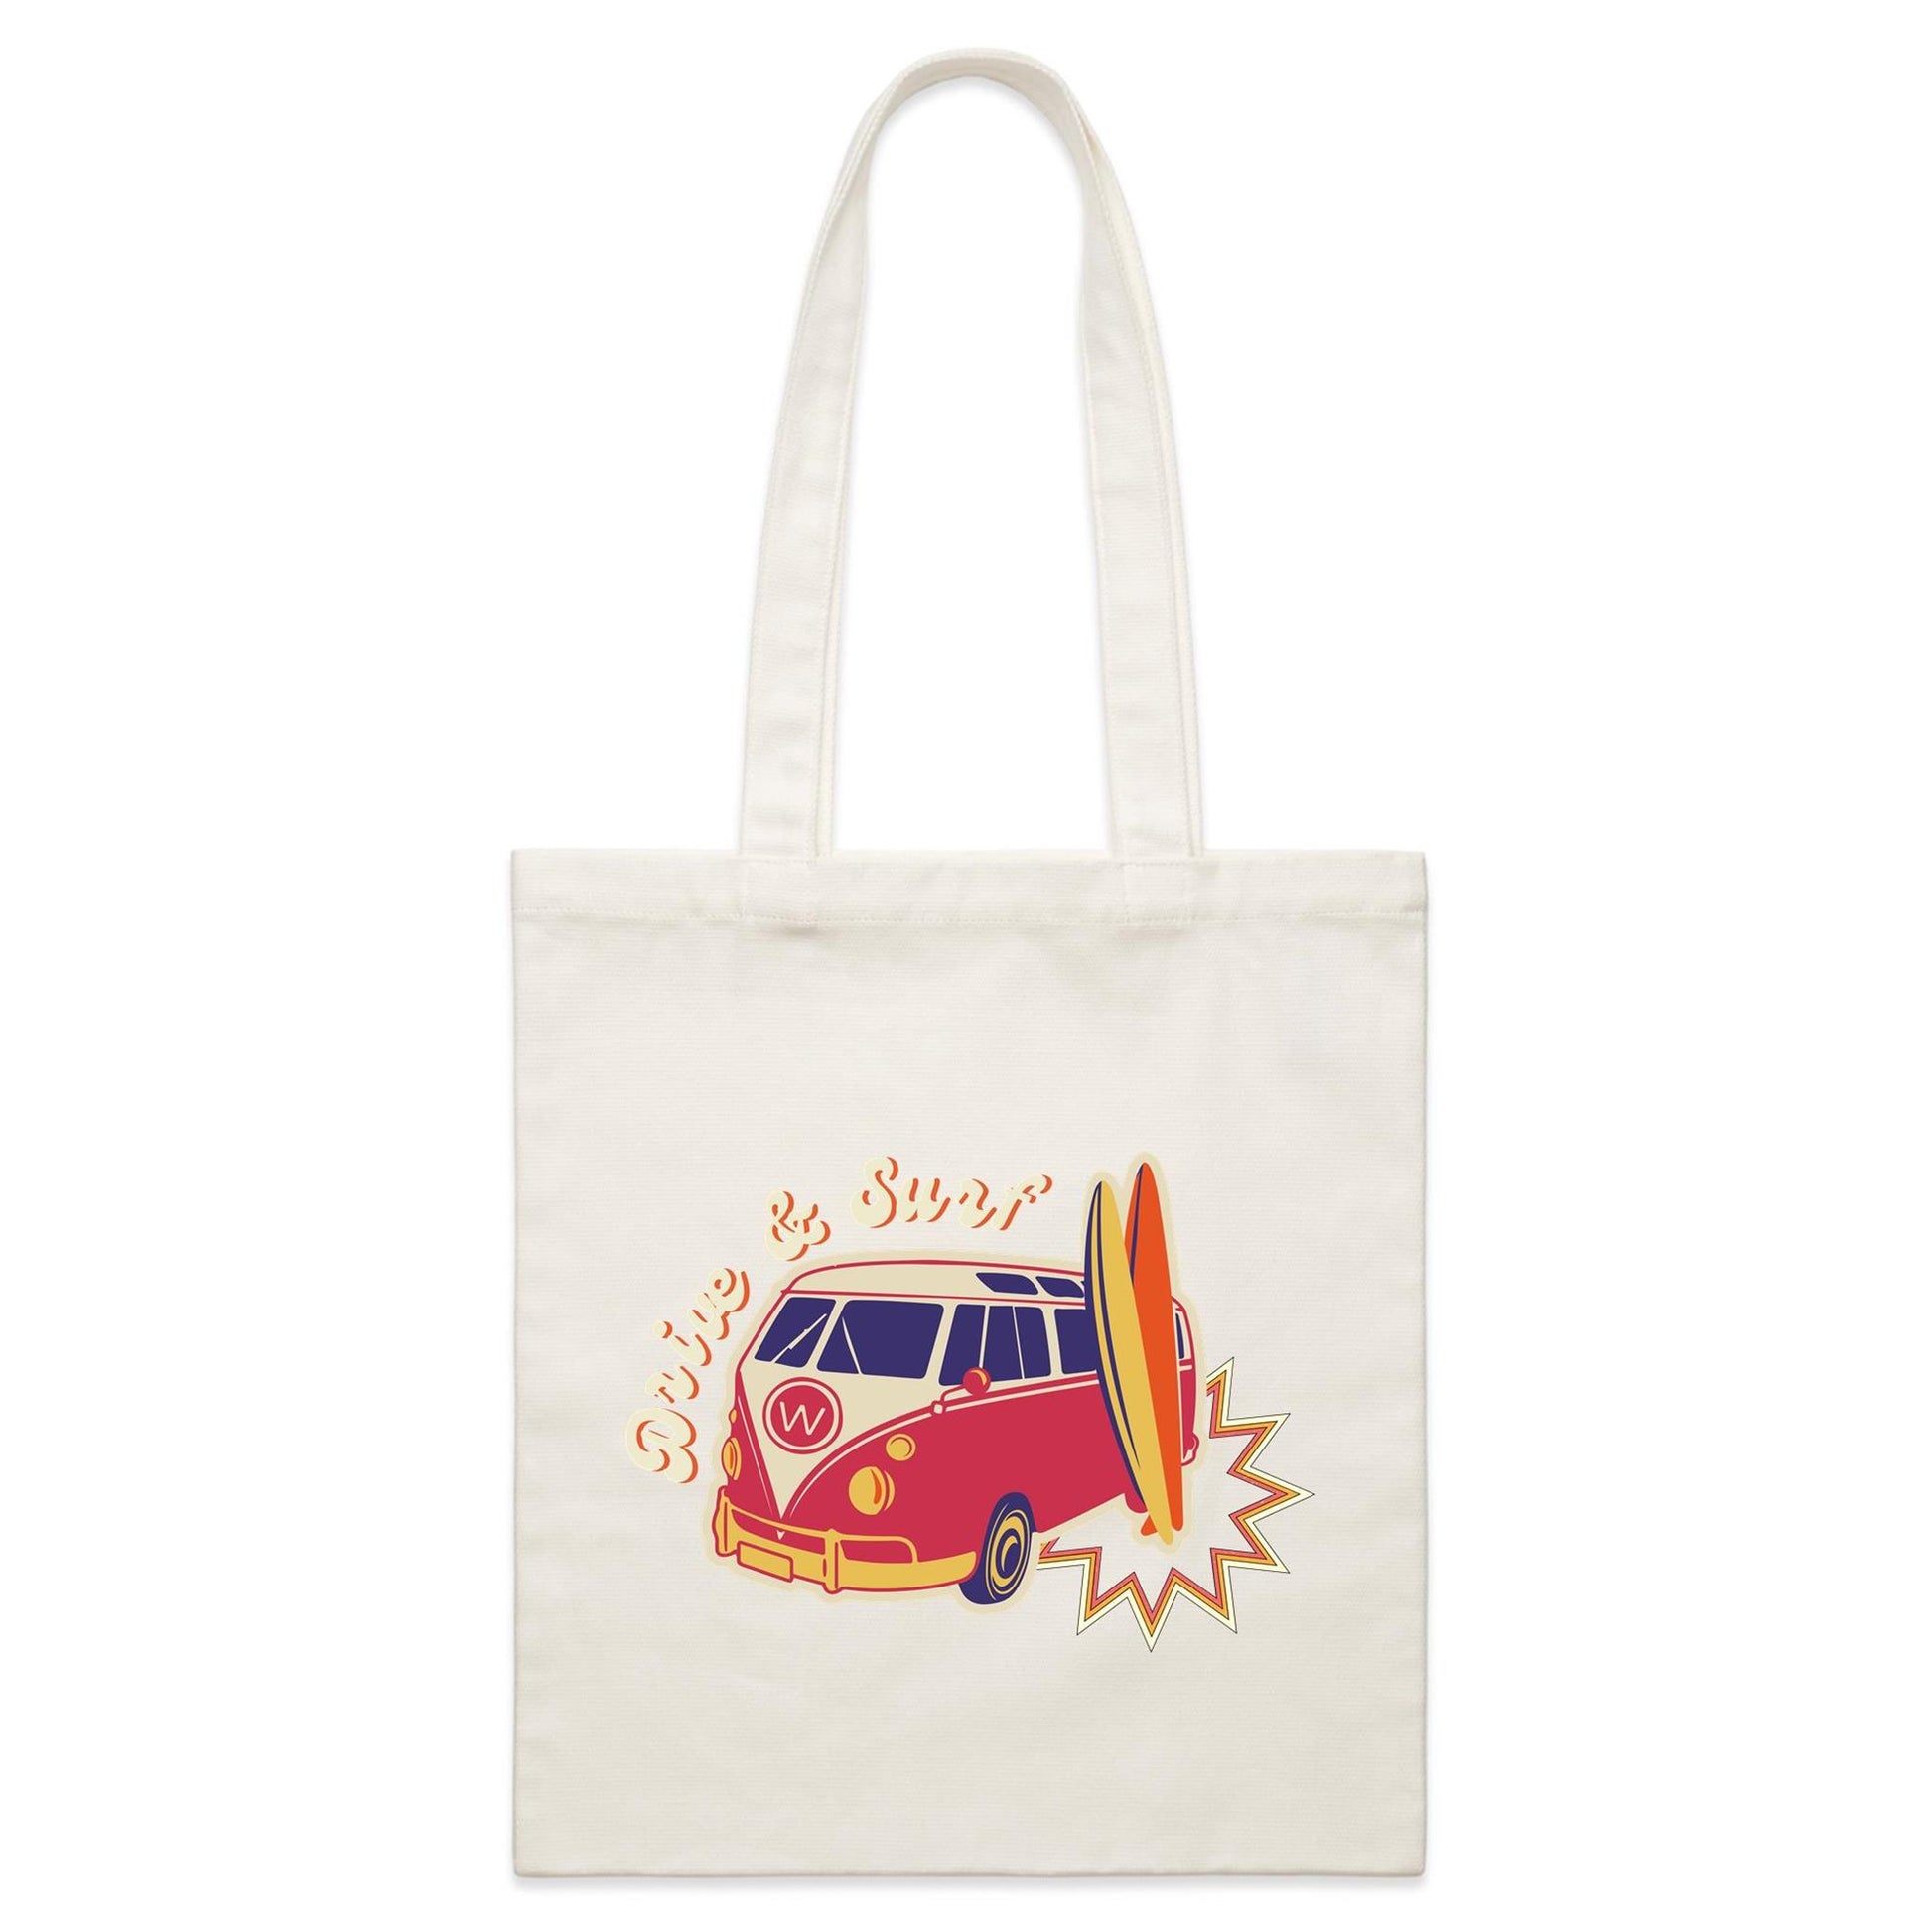 Drive And Surf - Parcel Canvas Tote Bag Default Title Parcel Tote Bag